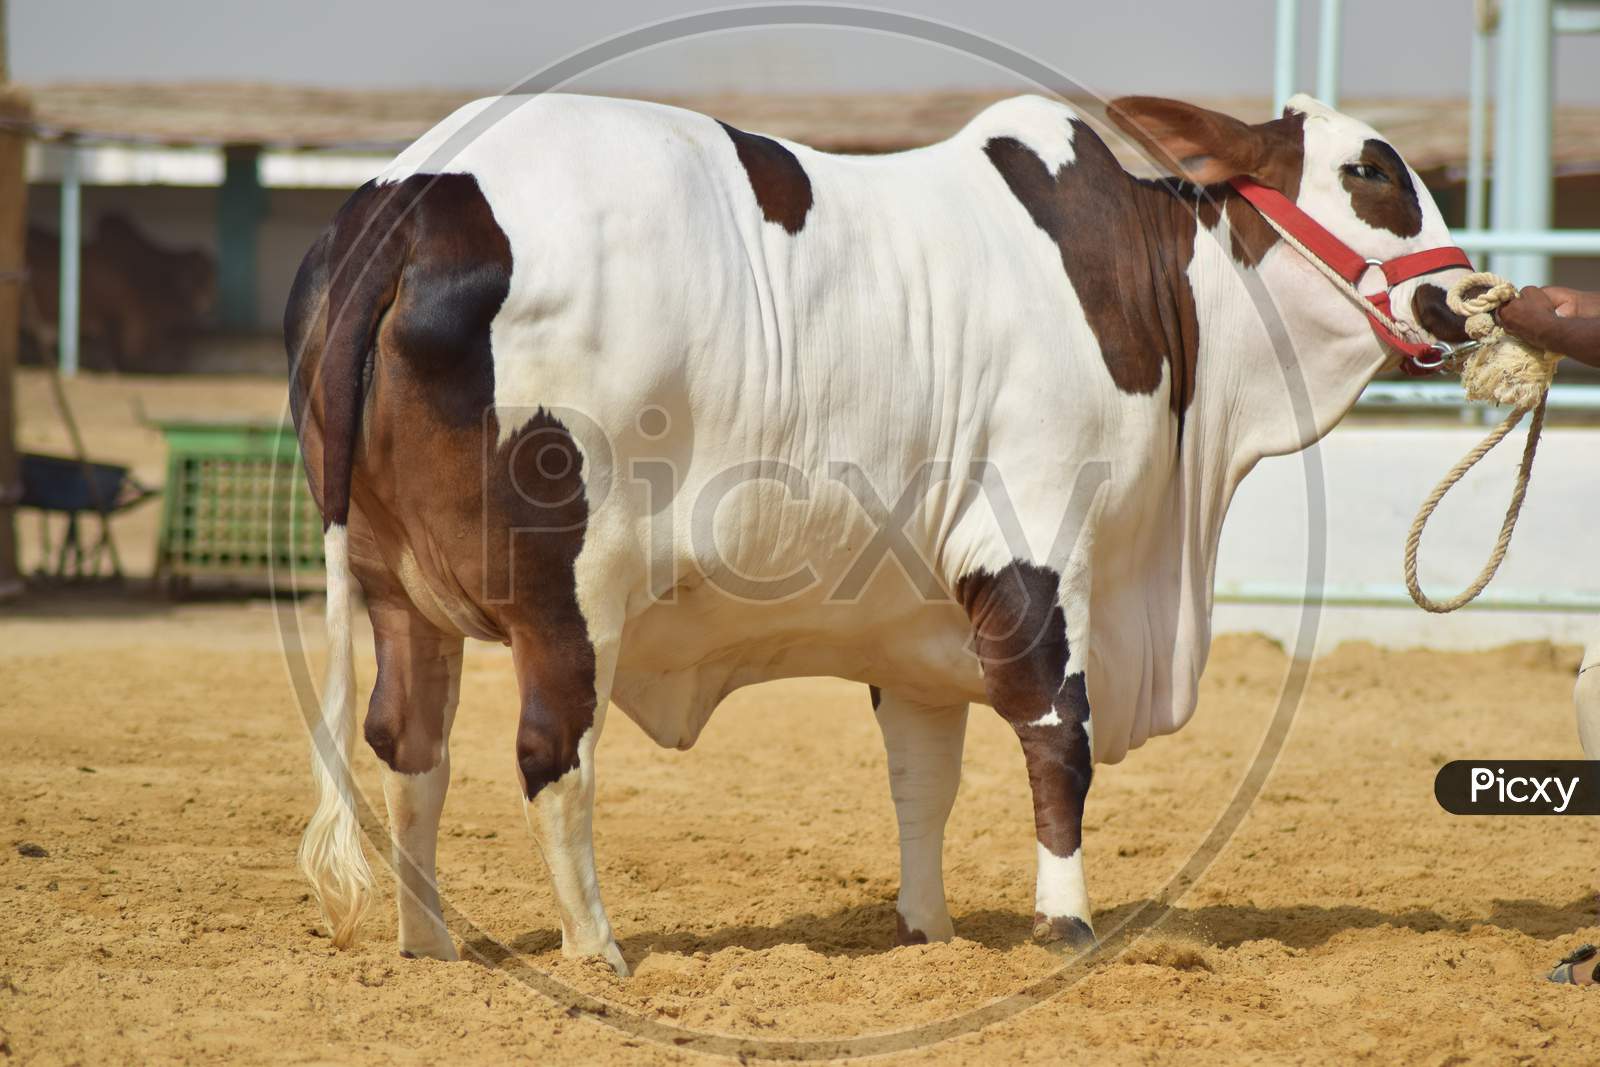 Heavy brown & white bull at a modern cattle farm